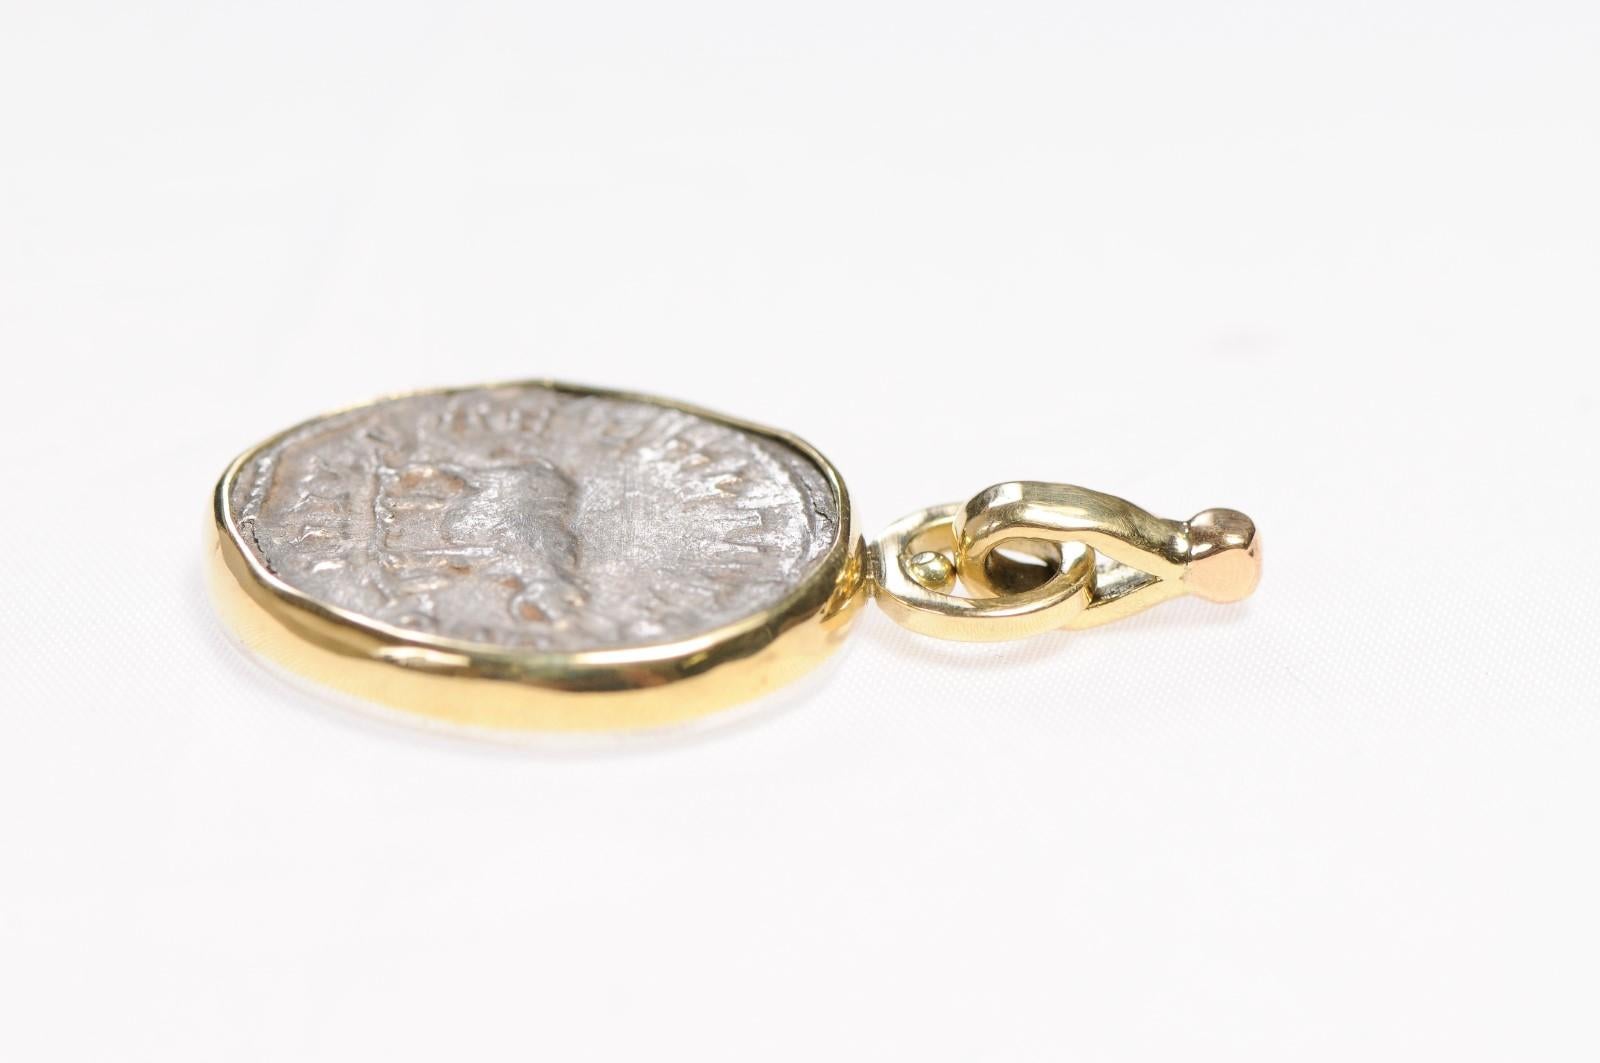 Eine authentische Otacilia Severa, Rom, Antoninianus AR-Münze (244-249 n. Chr.), eingefasst in einen kundenspezifischen 18-karätigen Goldanhänger mit Bügel. Auf der Seite der Münze ist das Nilpferd (nach rechts) zu sehen, mit SAECVLARES AVGG und